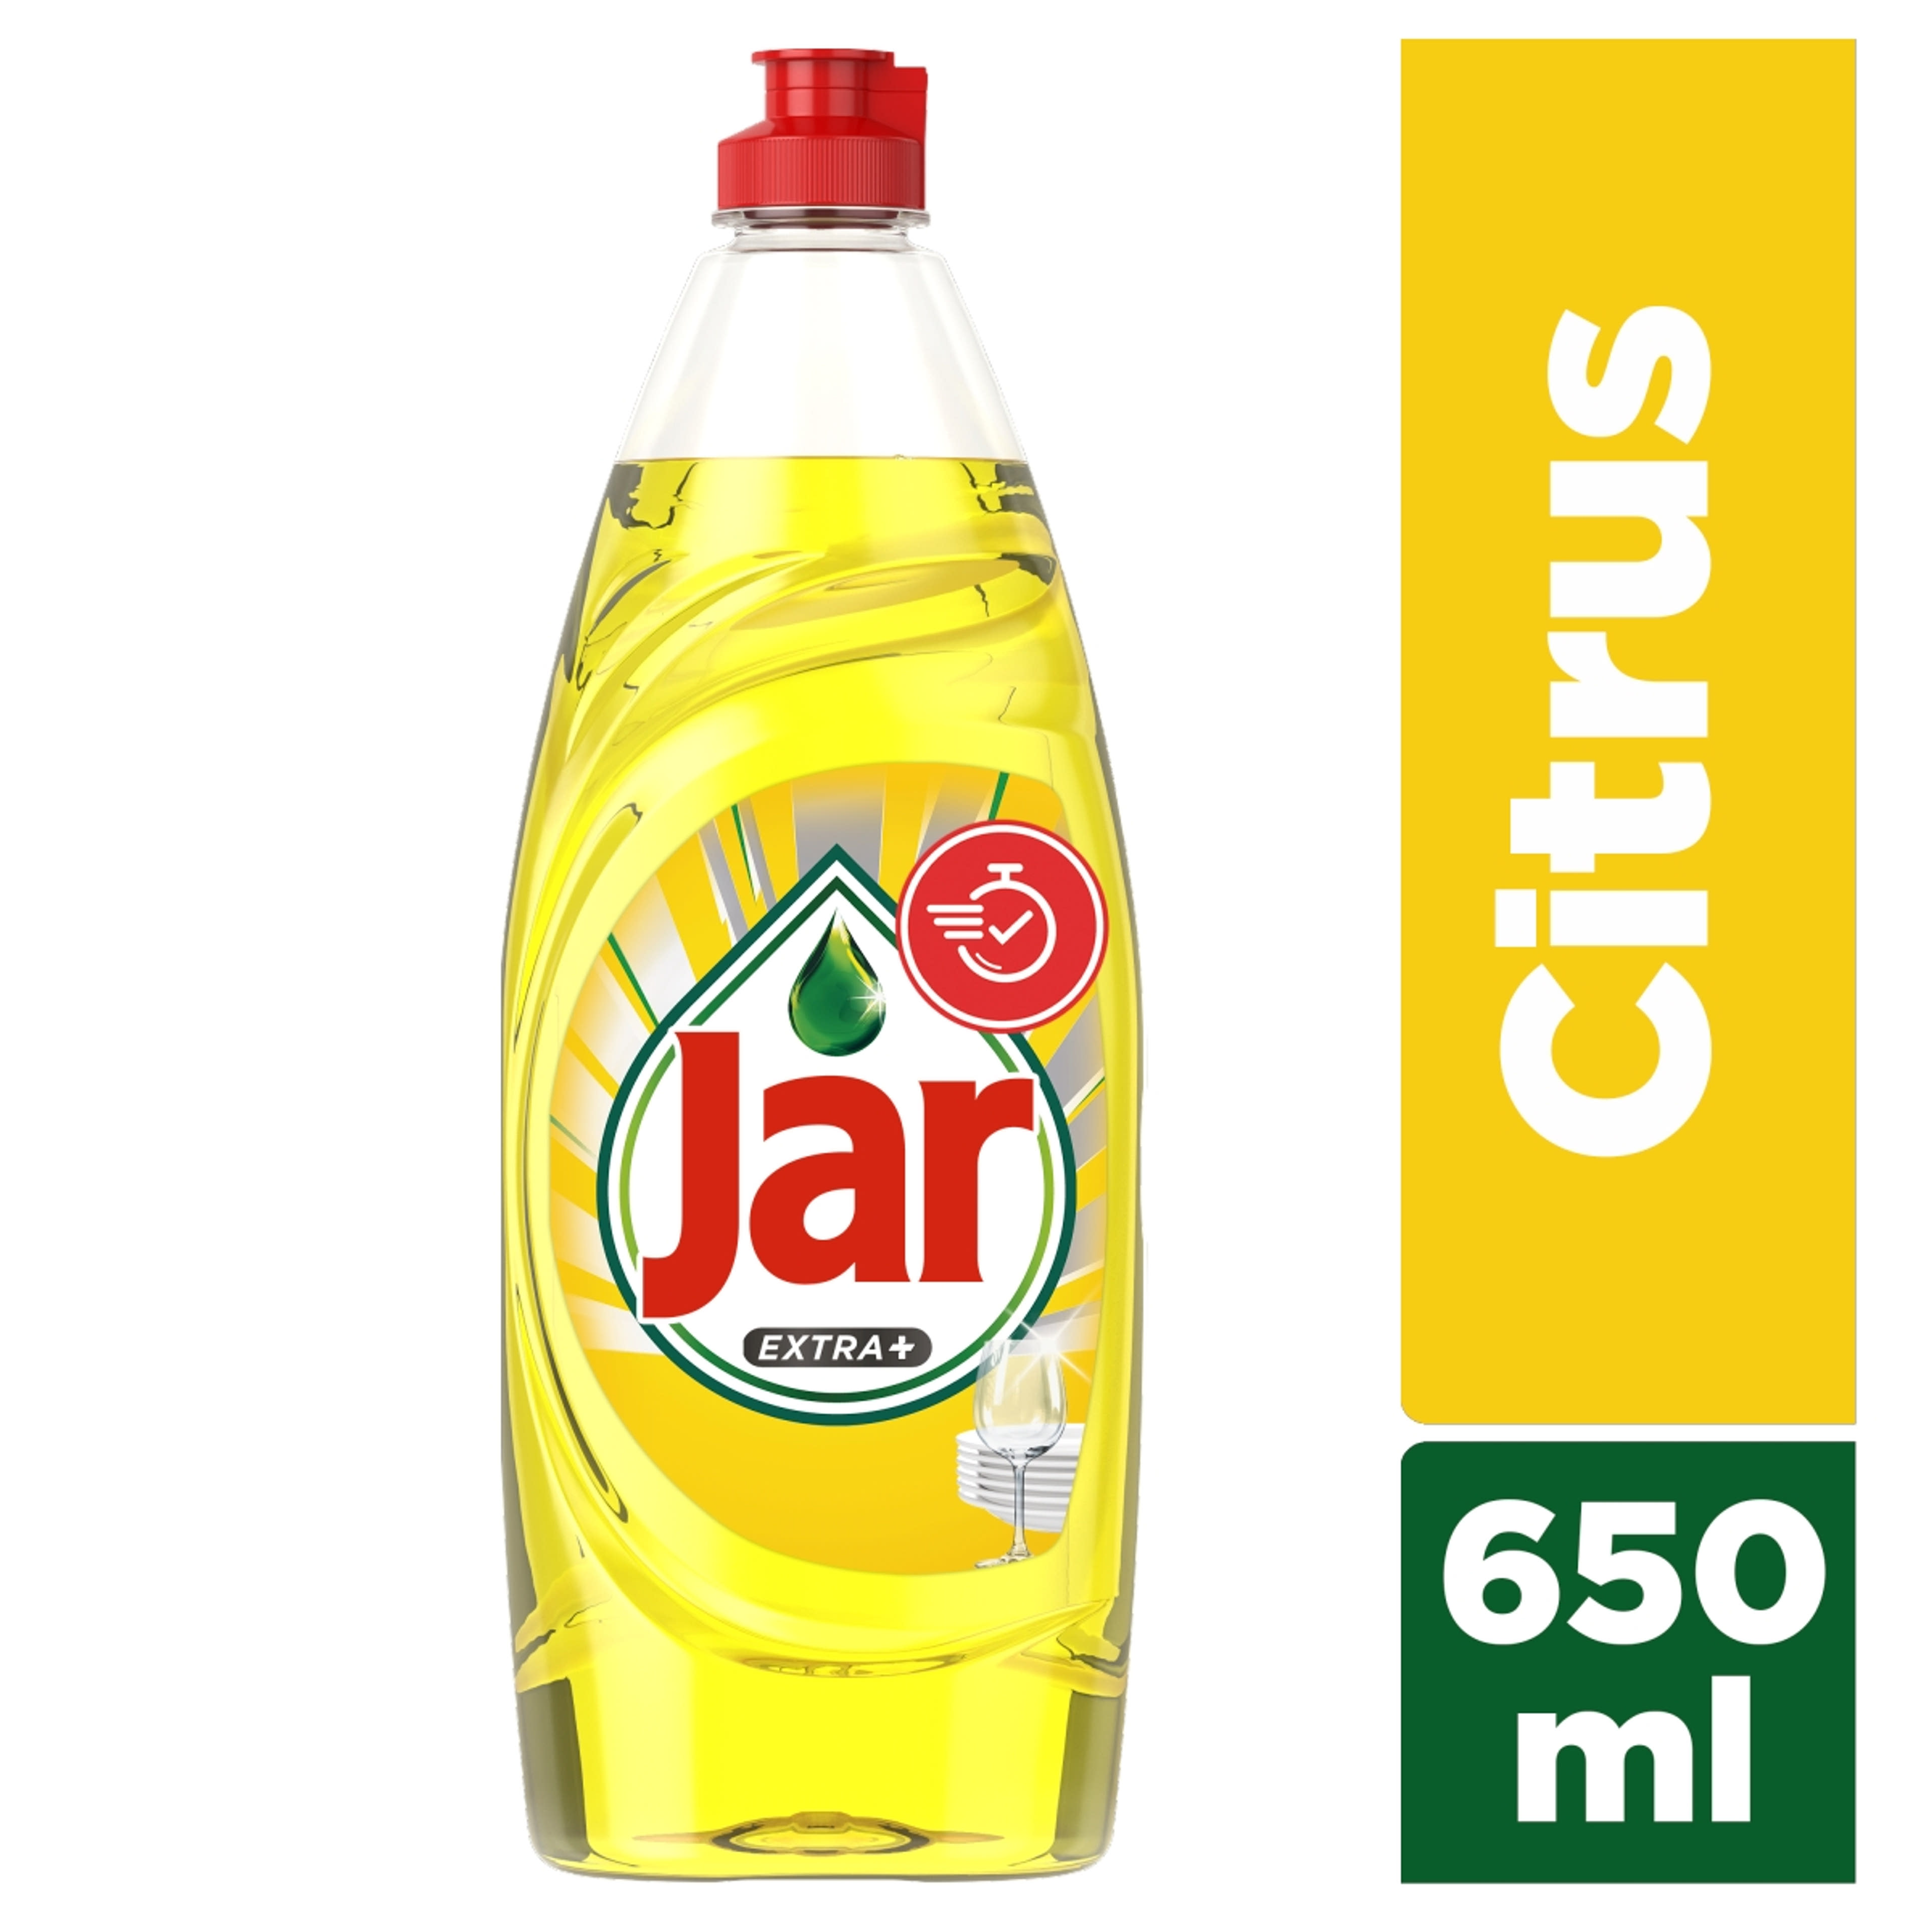 Jar Extra+ mosogatószer, citrus illattal - 650ml-2